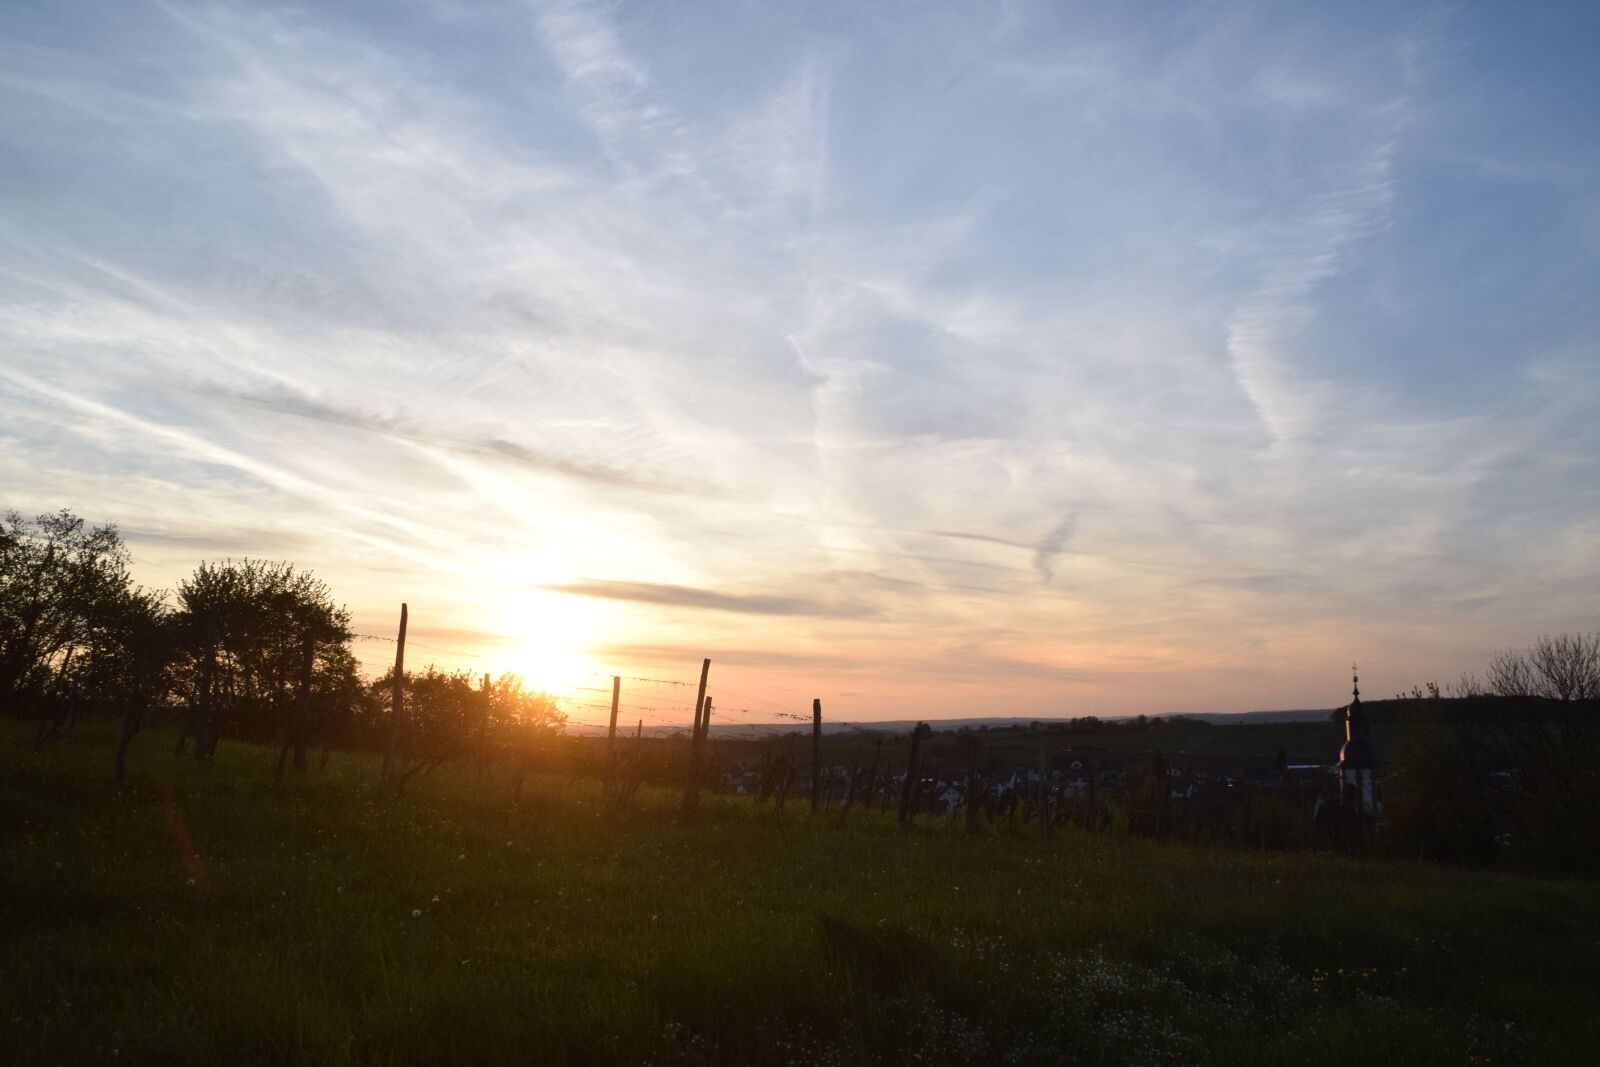 Nikon D3300 + Tamron AF 18-200mm F3.5-6.3 XR Di II LD Aspherical (IF) Macro sample photo. Beautiful, sky, beautiful, sunset photography